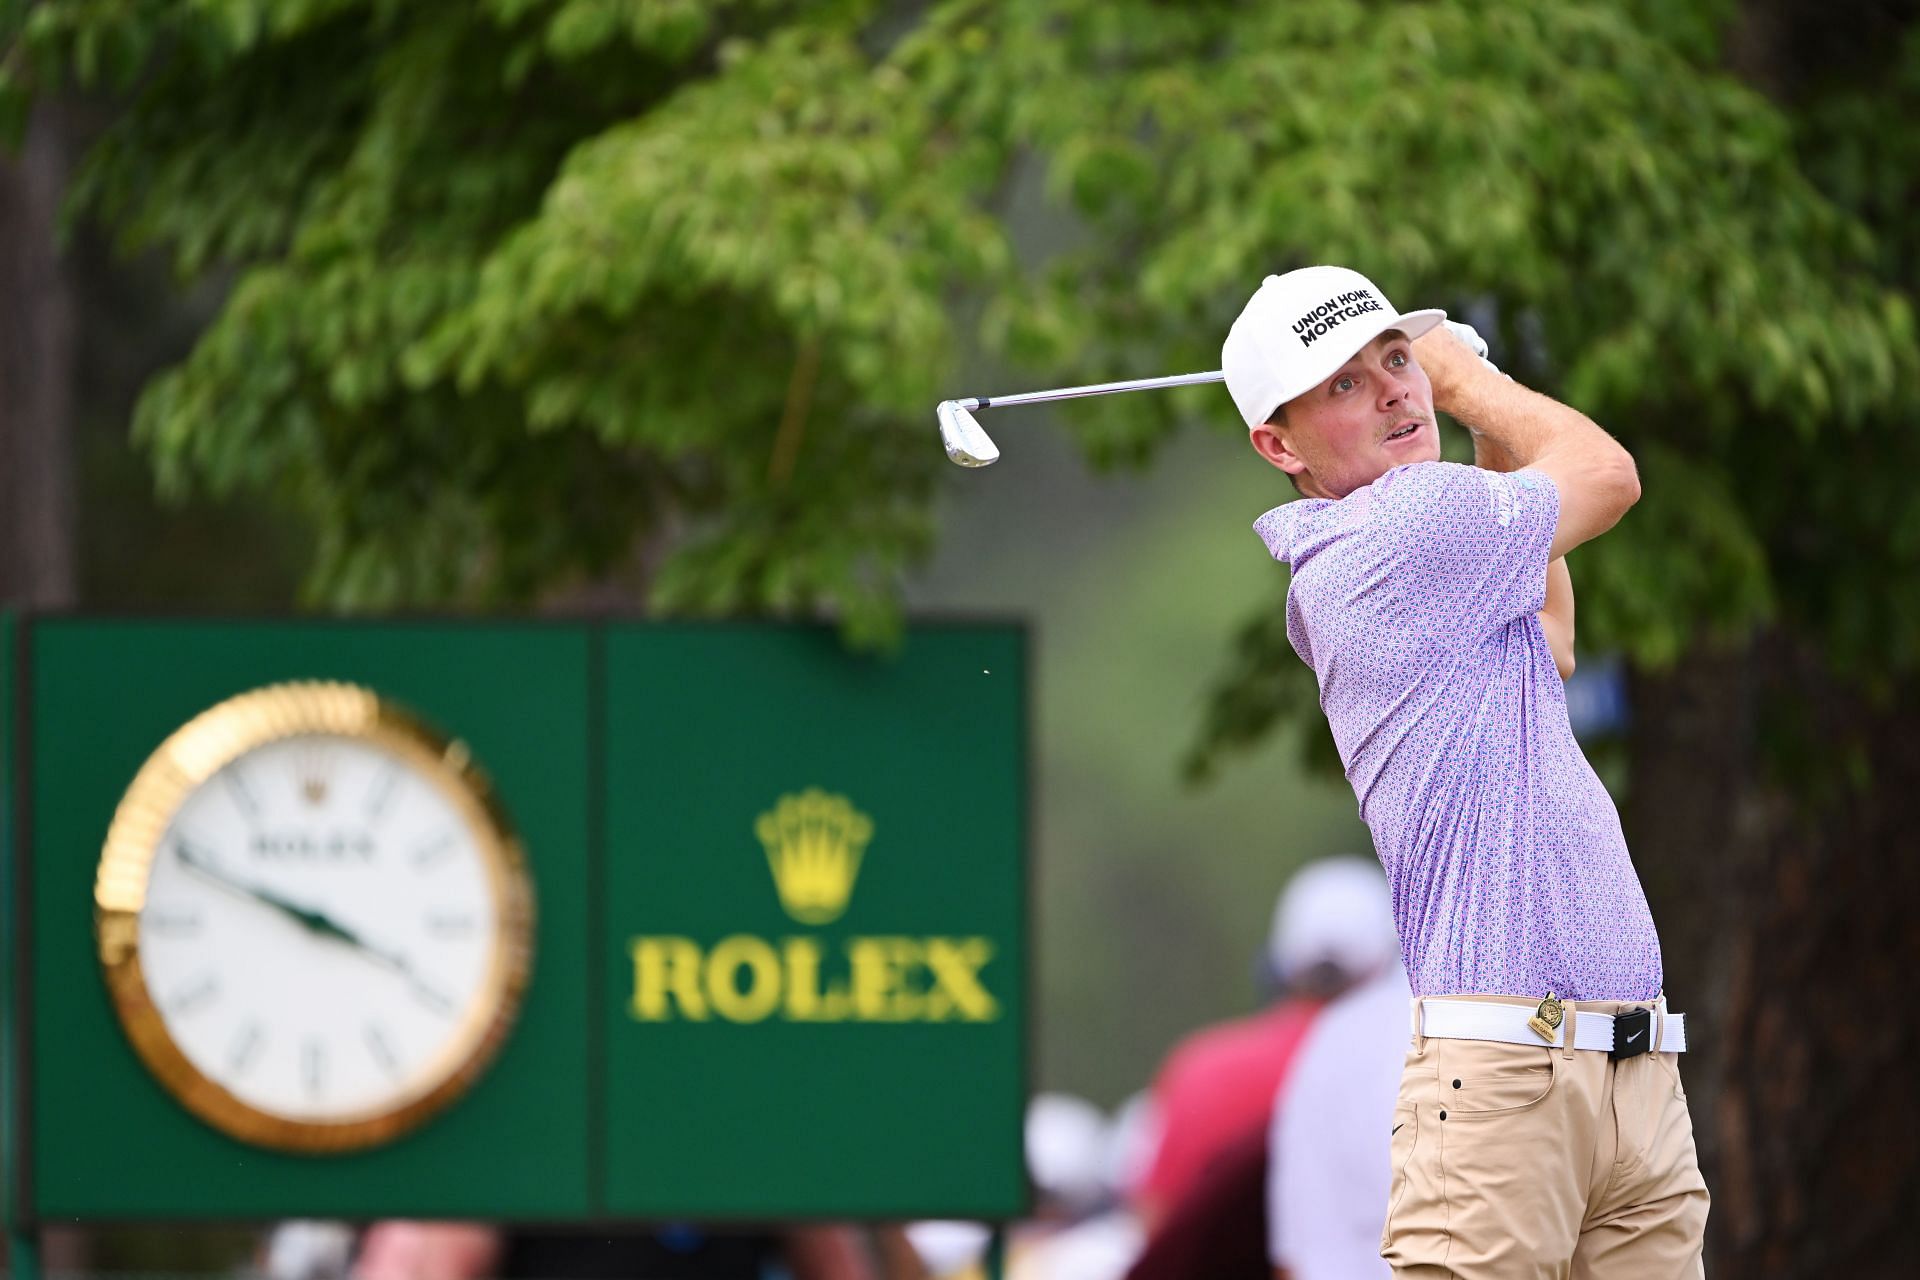 Luke Clanton will make his PGA Tour debut this weekend